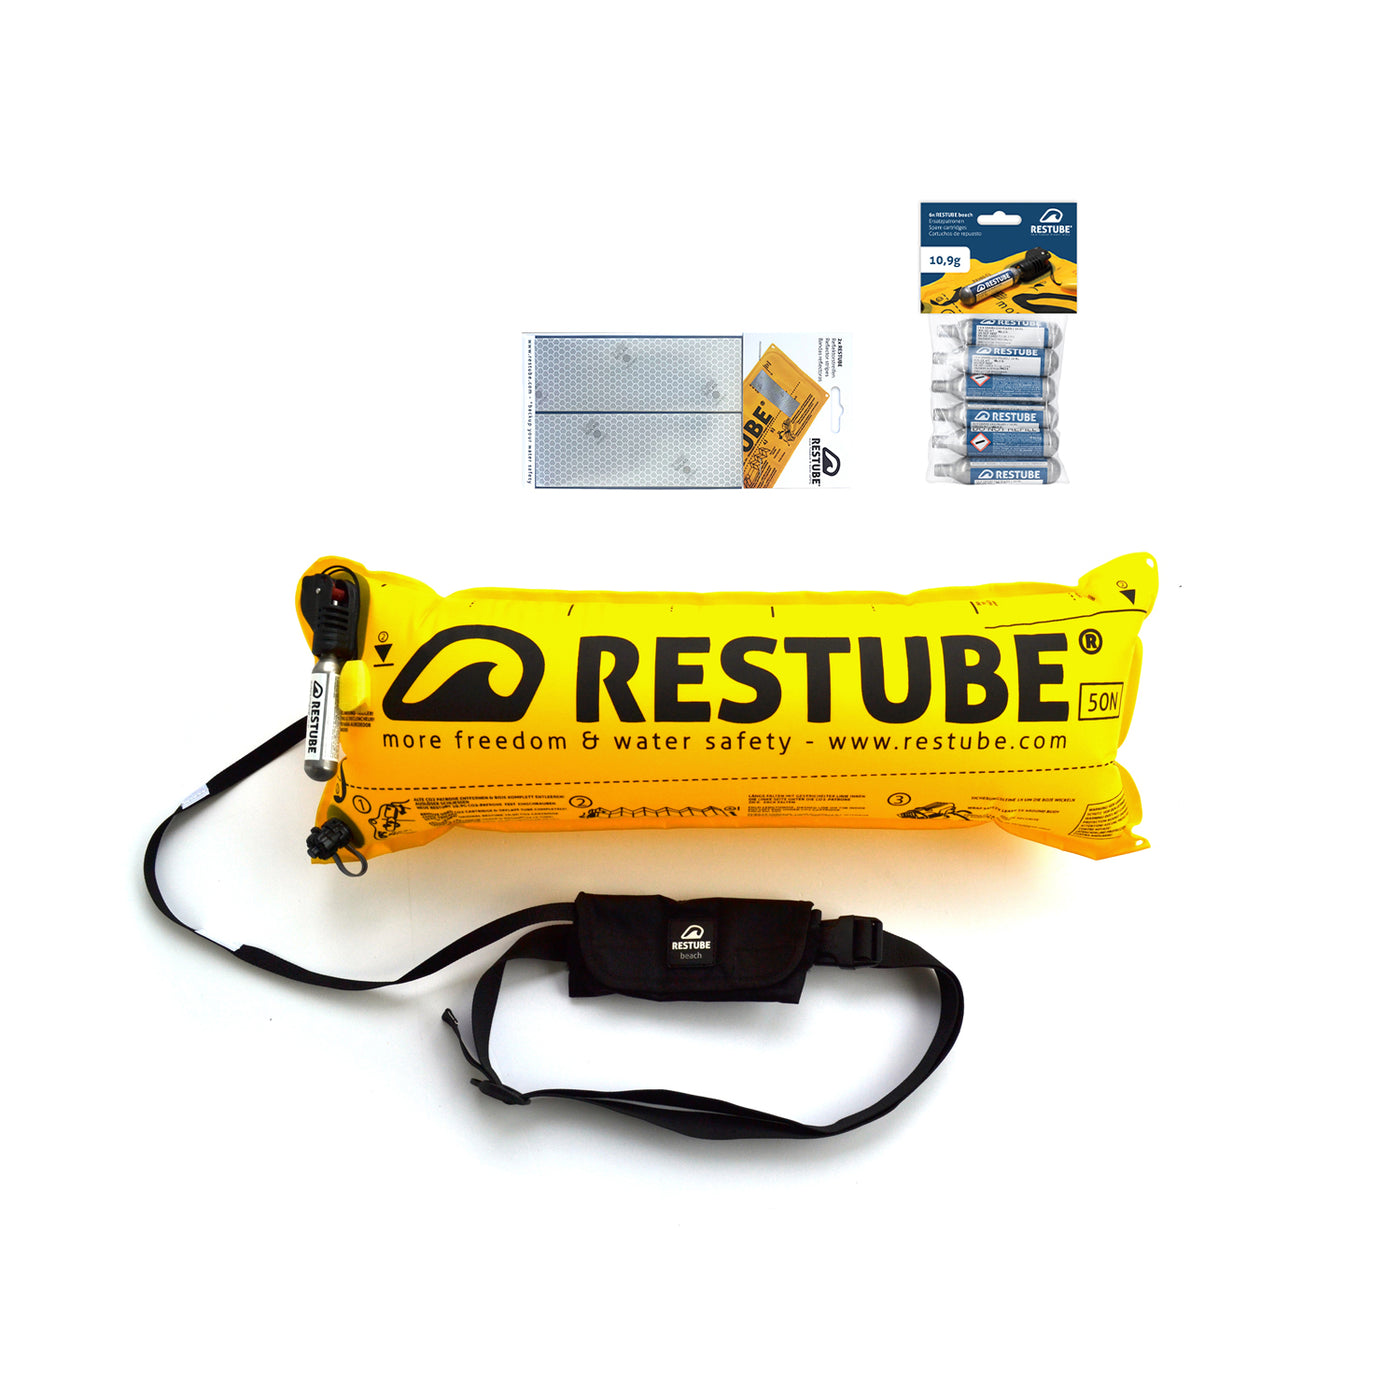 Restube beach starter package